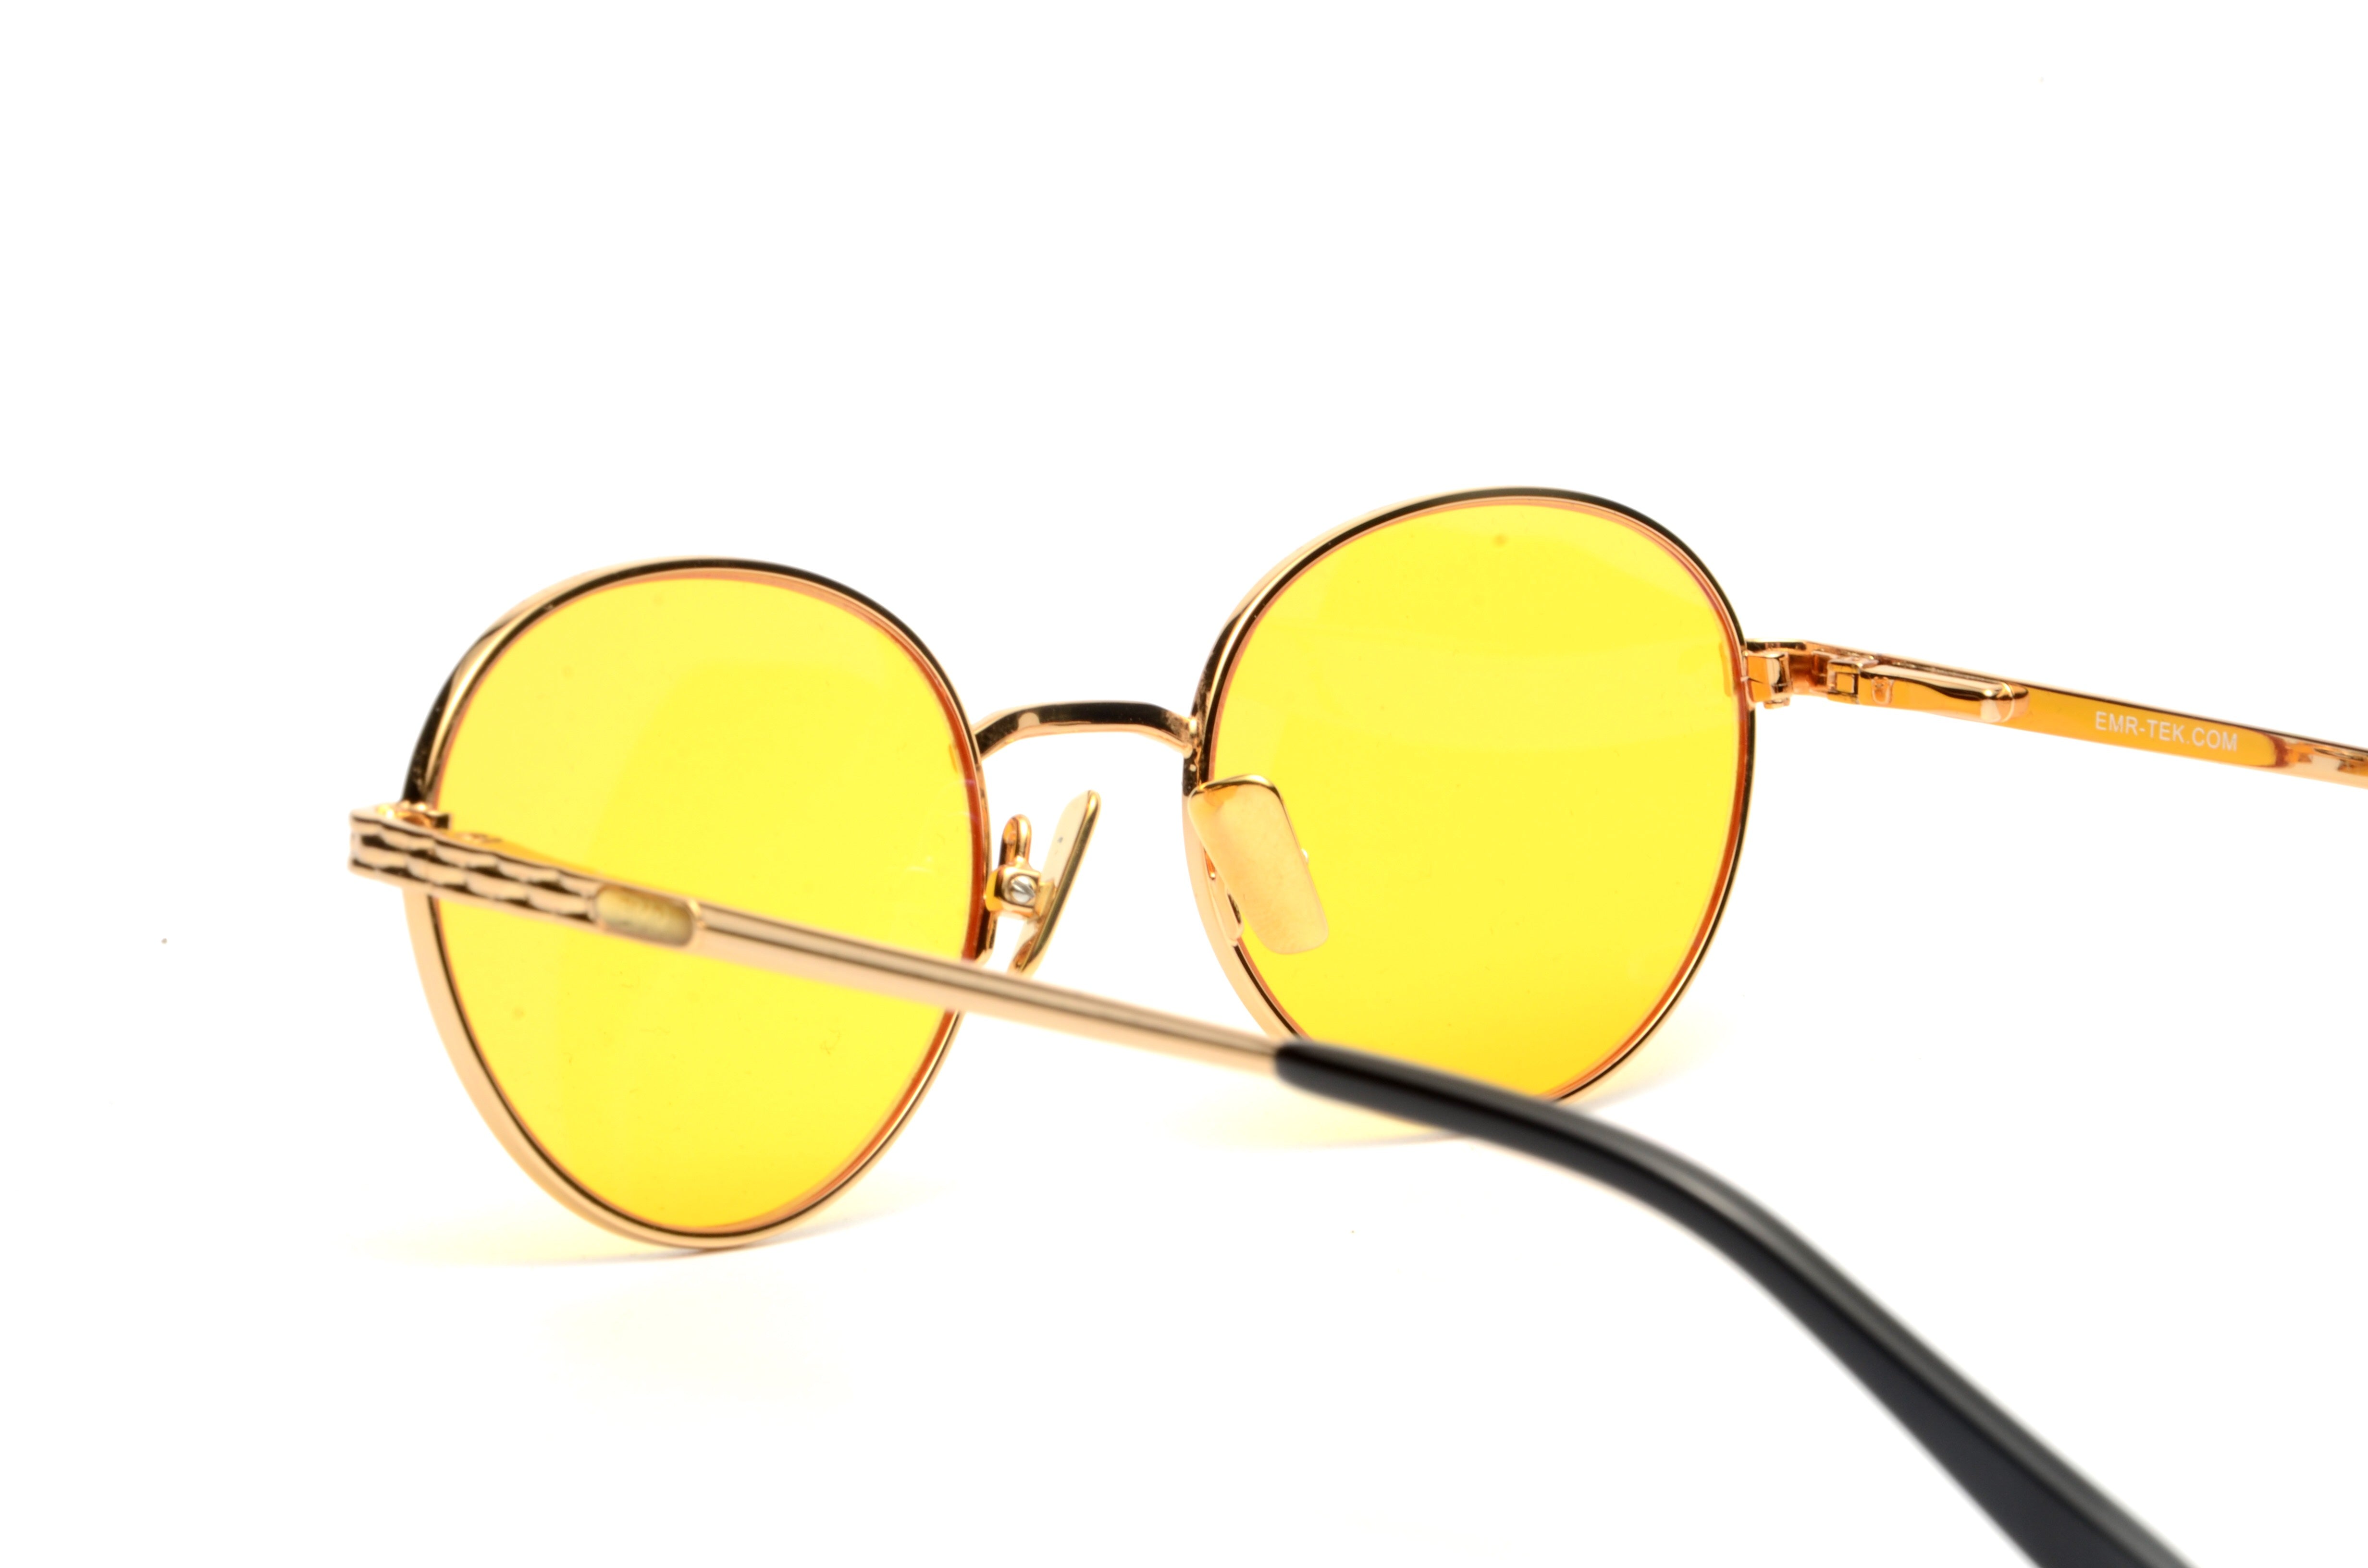 Gafas con lentes amarillas anti vaho. Ref. EVASHARKNJA - Jukamo